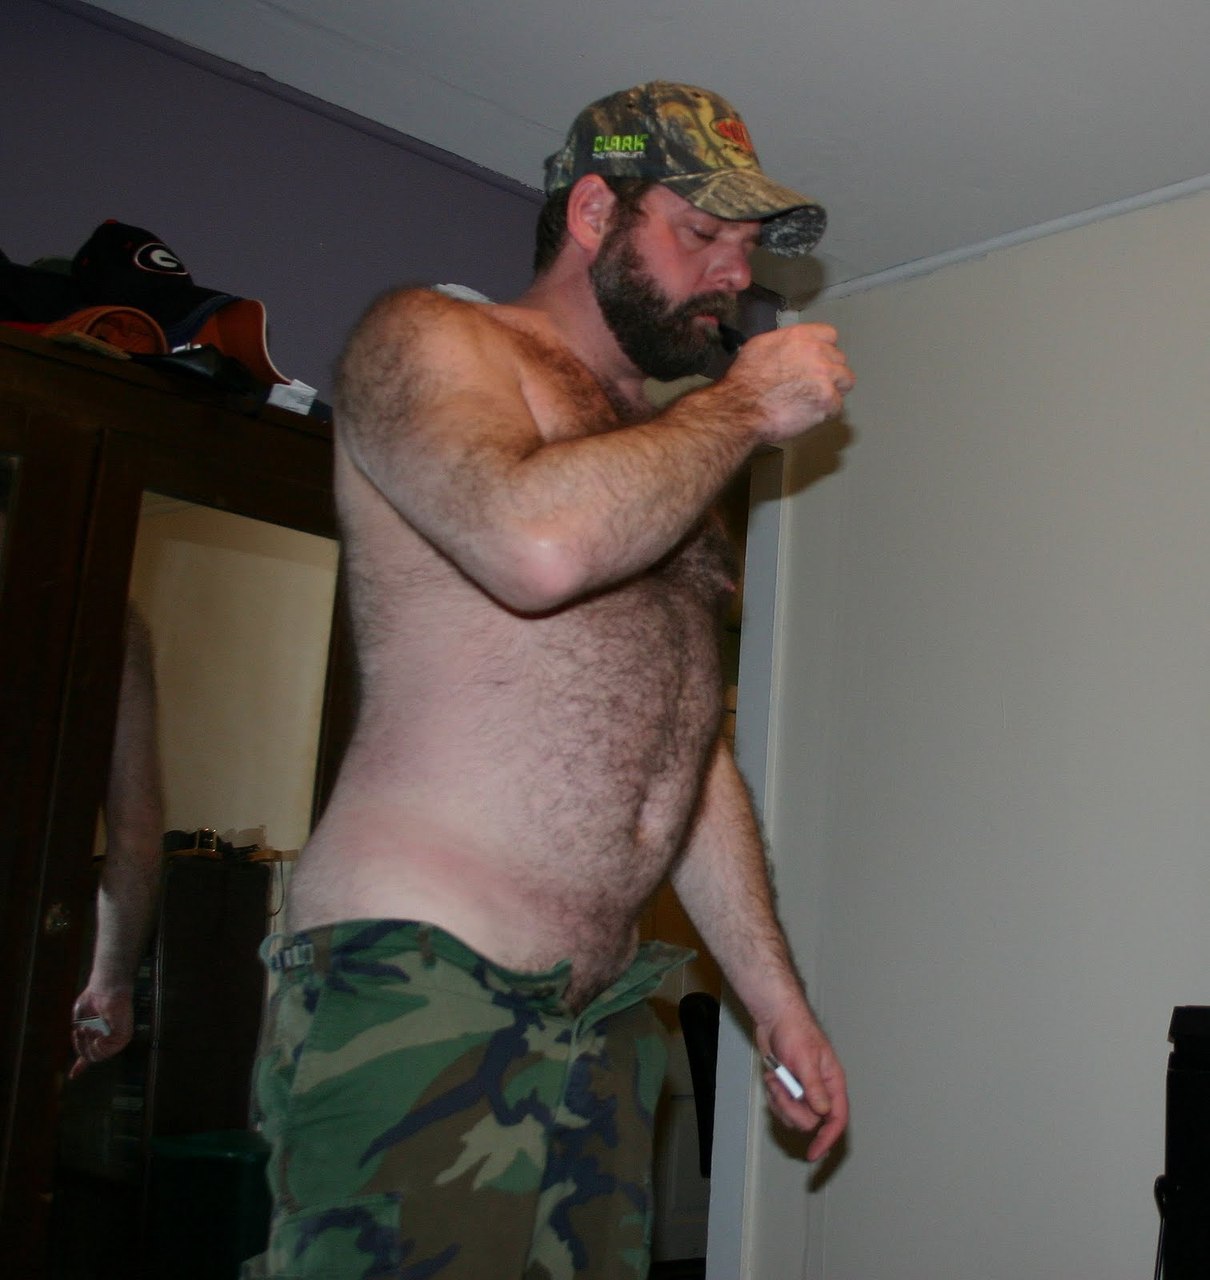 Redneck white trash men naked